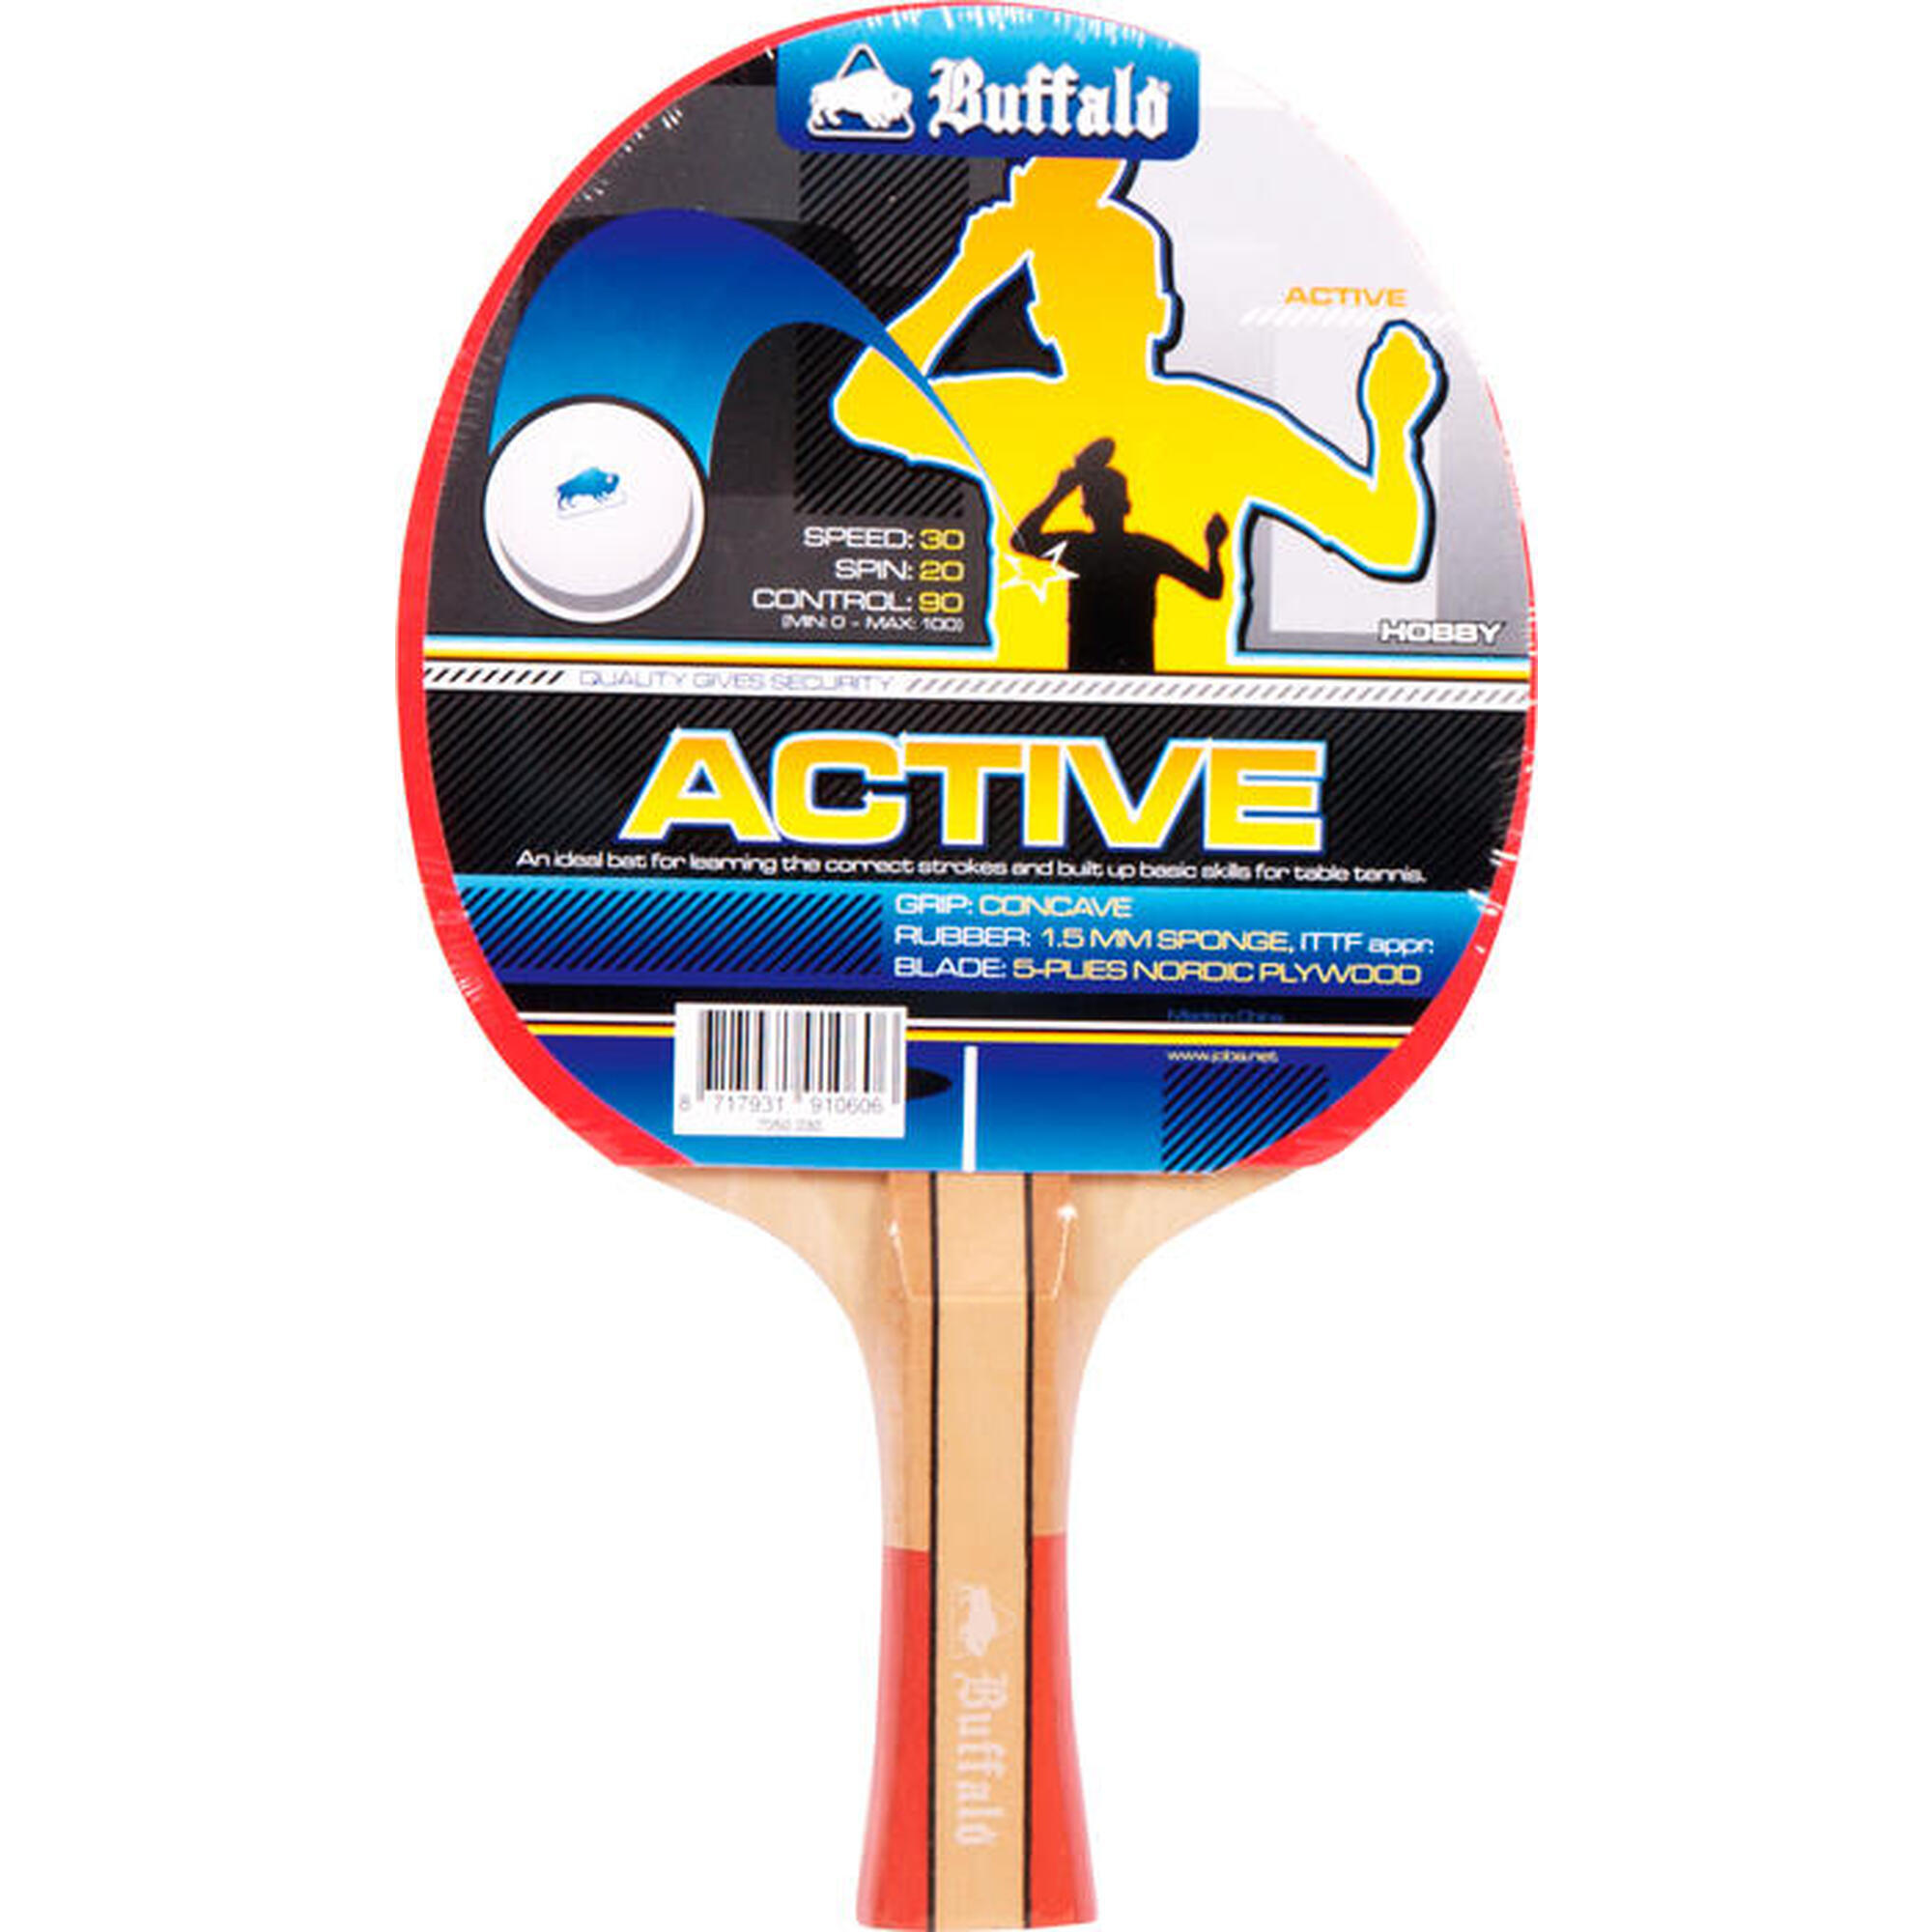 Raquette de tennis de table Buffalo Active